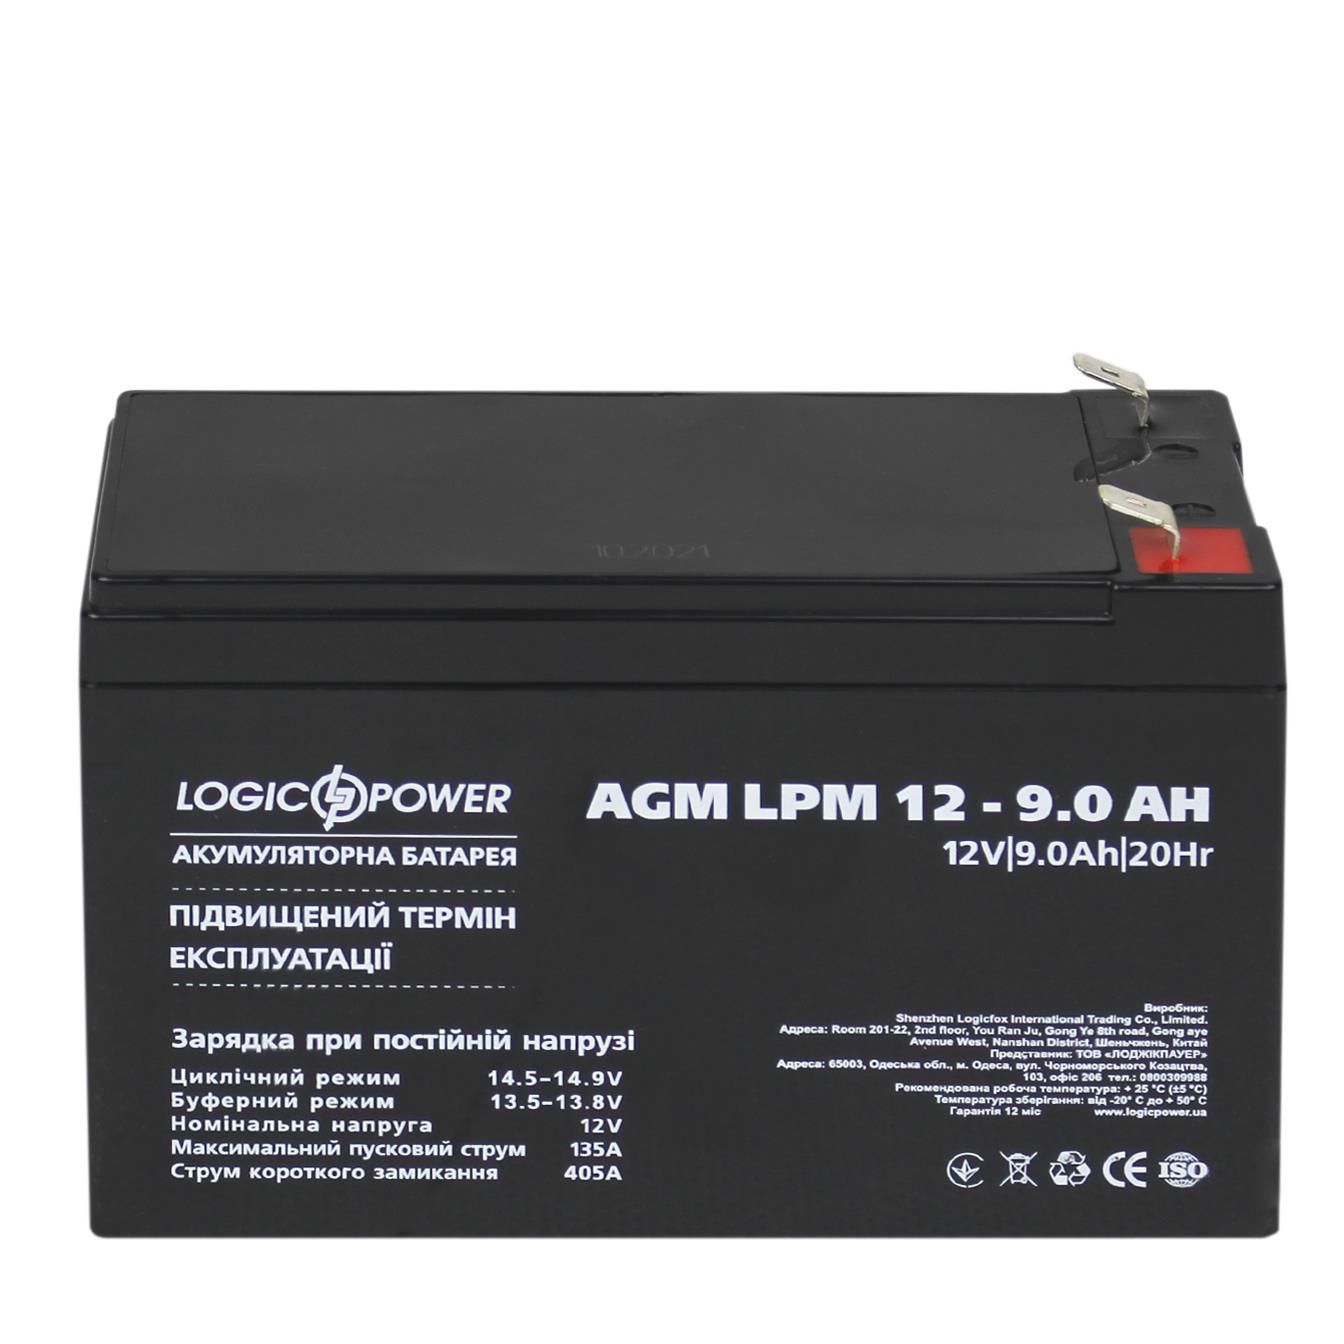 продаём LogicPower AGM LPM 12V - 9 Ah (3866) в Украине - фото 4